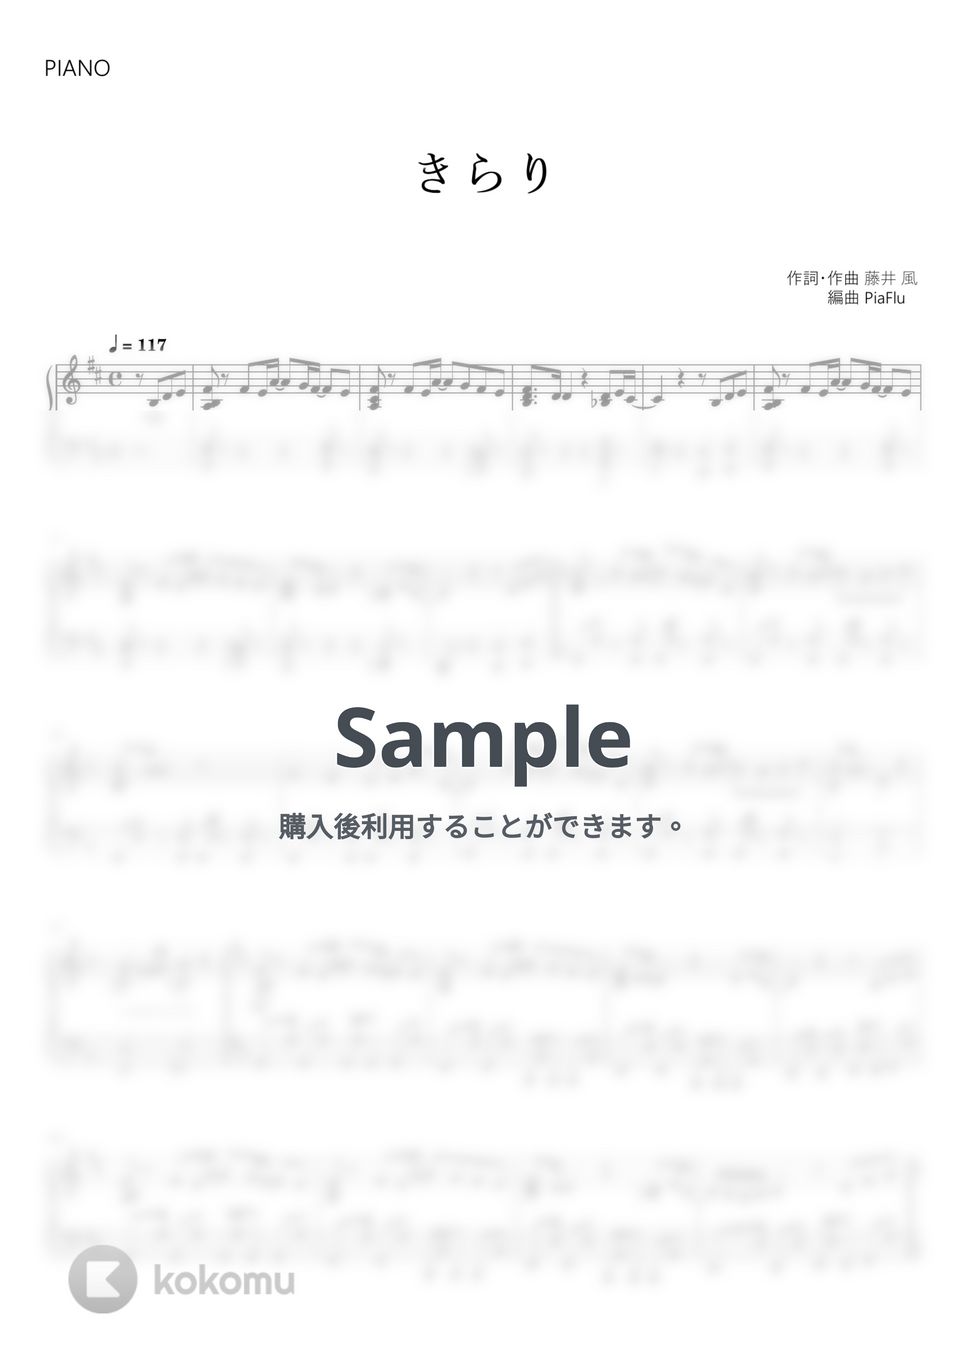 藤井 風 - きらり (ピアノ) by PiaFlu